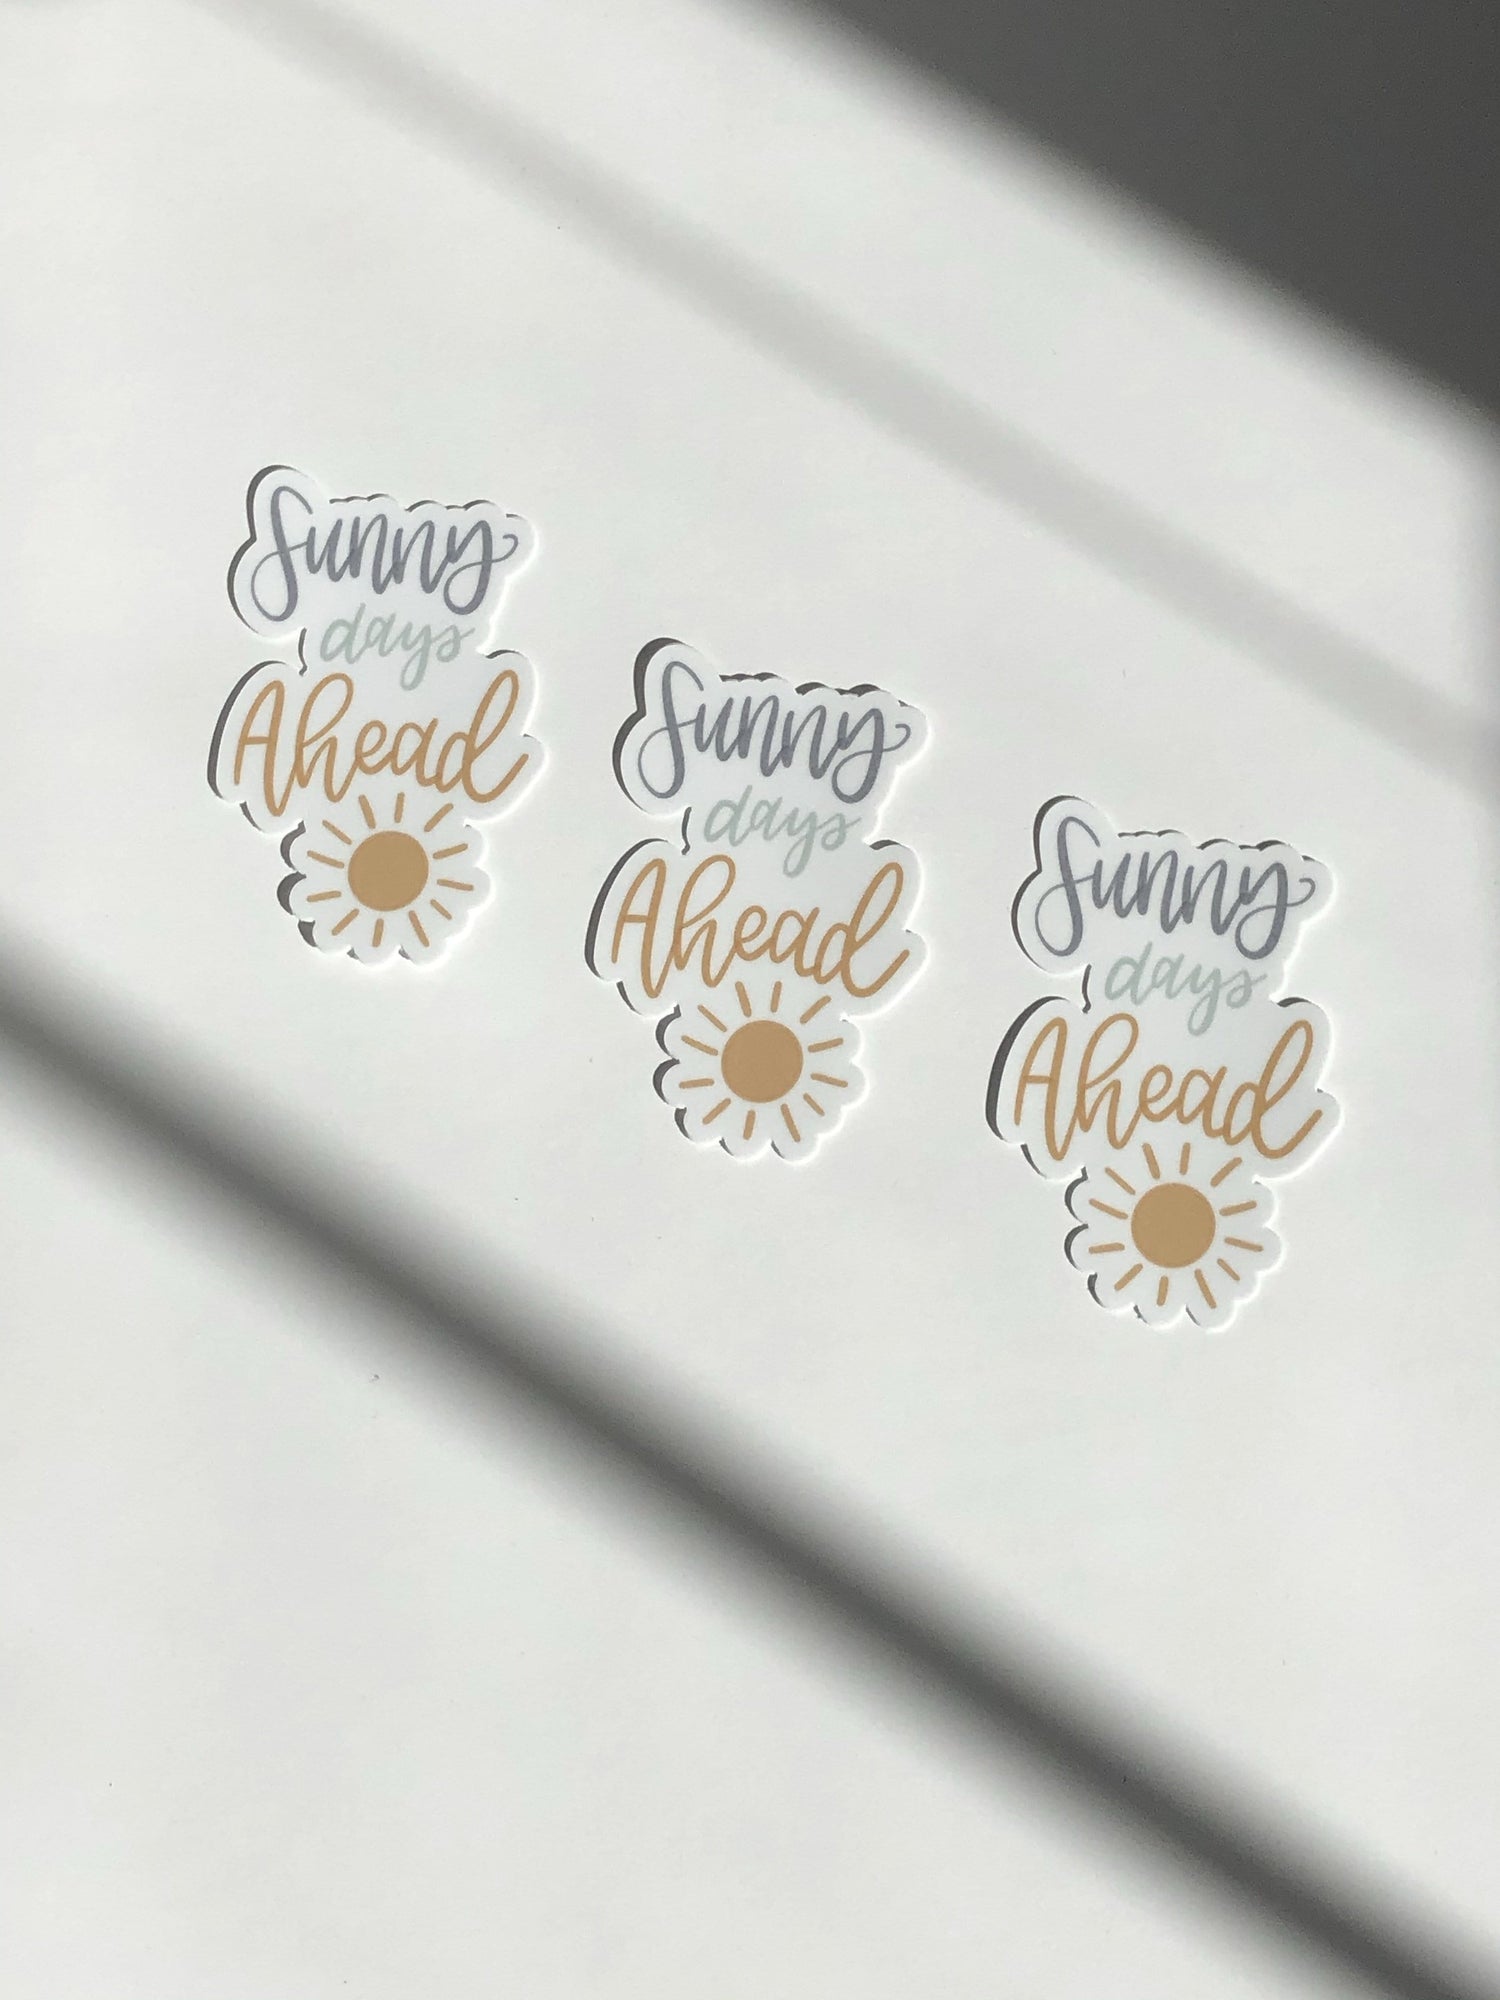 Sunny Days Ahead Magnet - [Good Apparel]